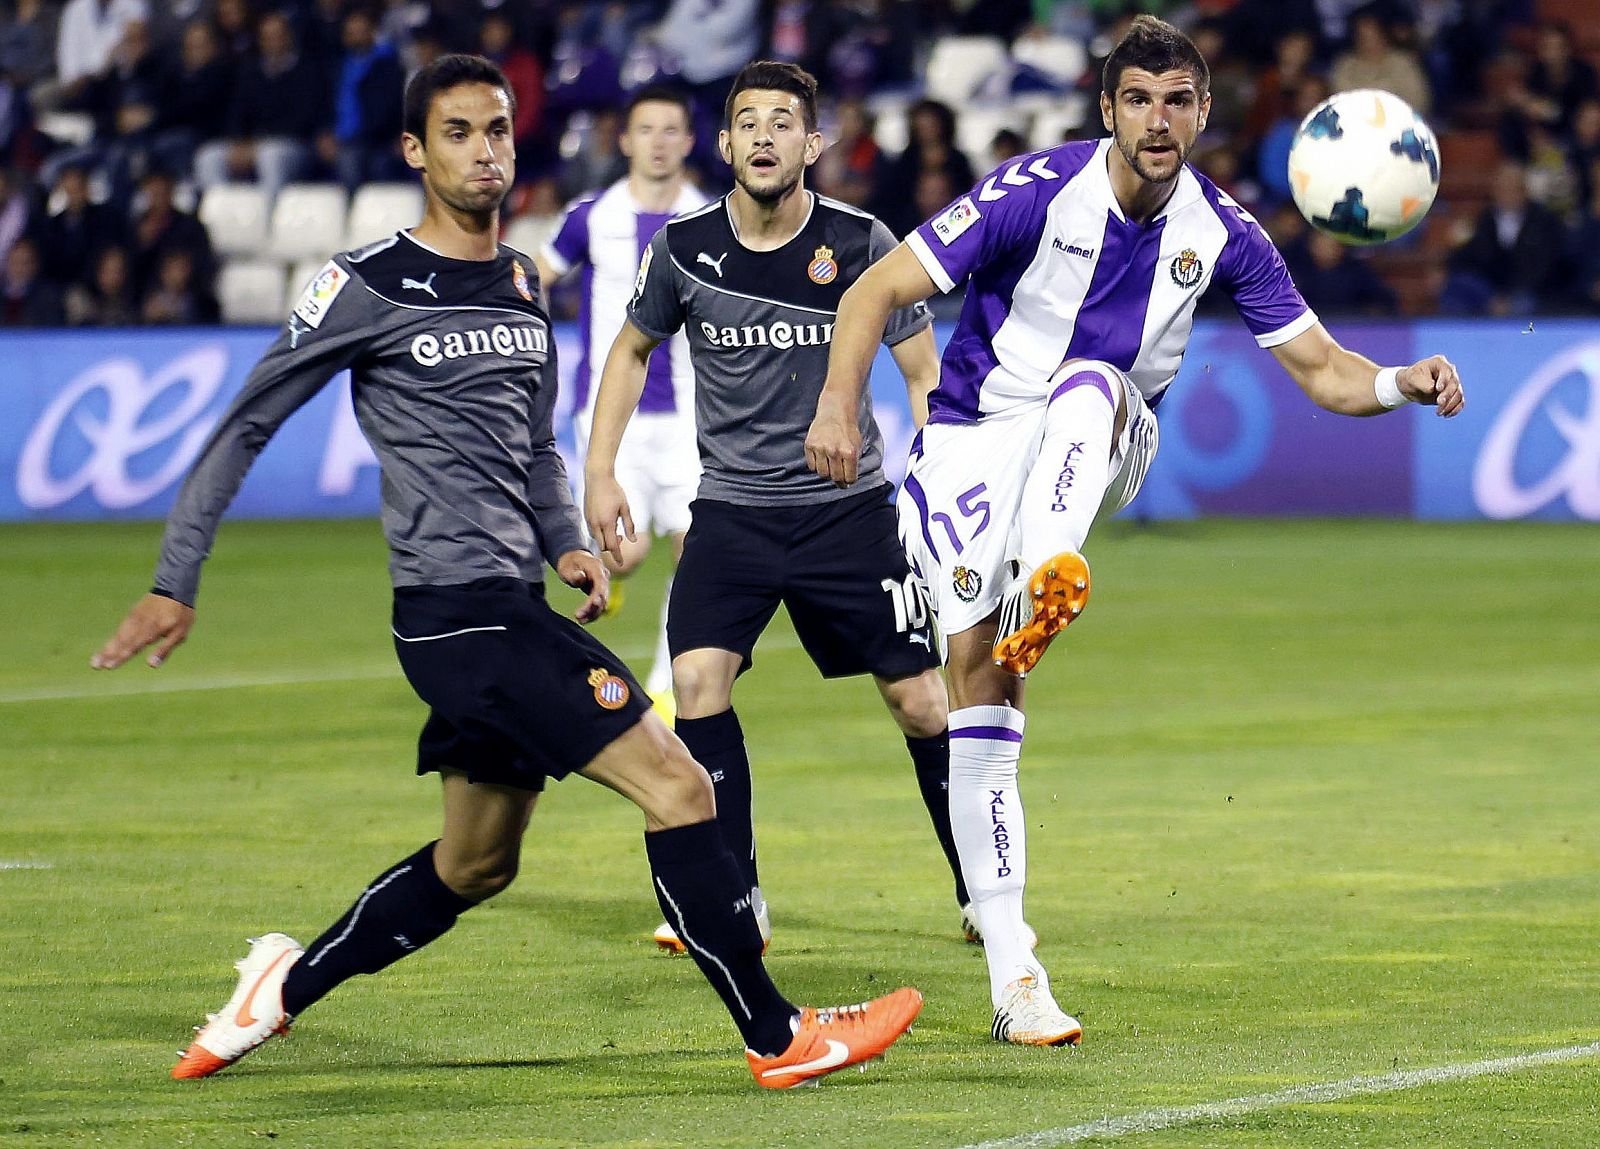 El defensa serbio del Real Valladolid, Stefan Mitrovic, despeja el balón junto a los jugadores del RCD Espanyol.